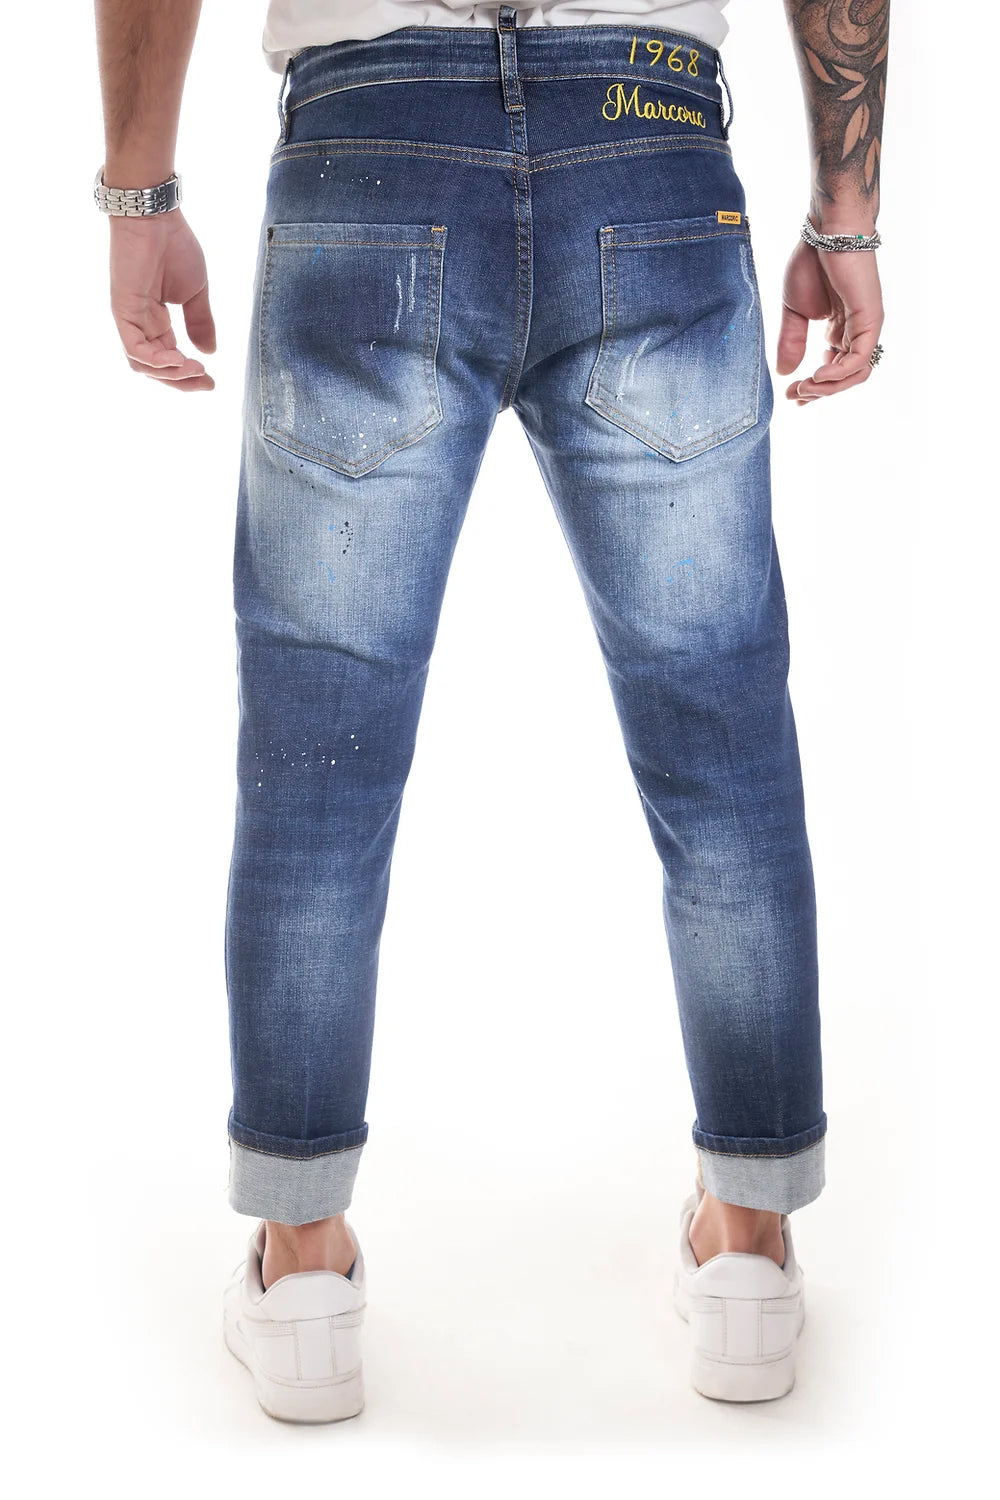 Marcoric Jeans Model E 2273